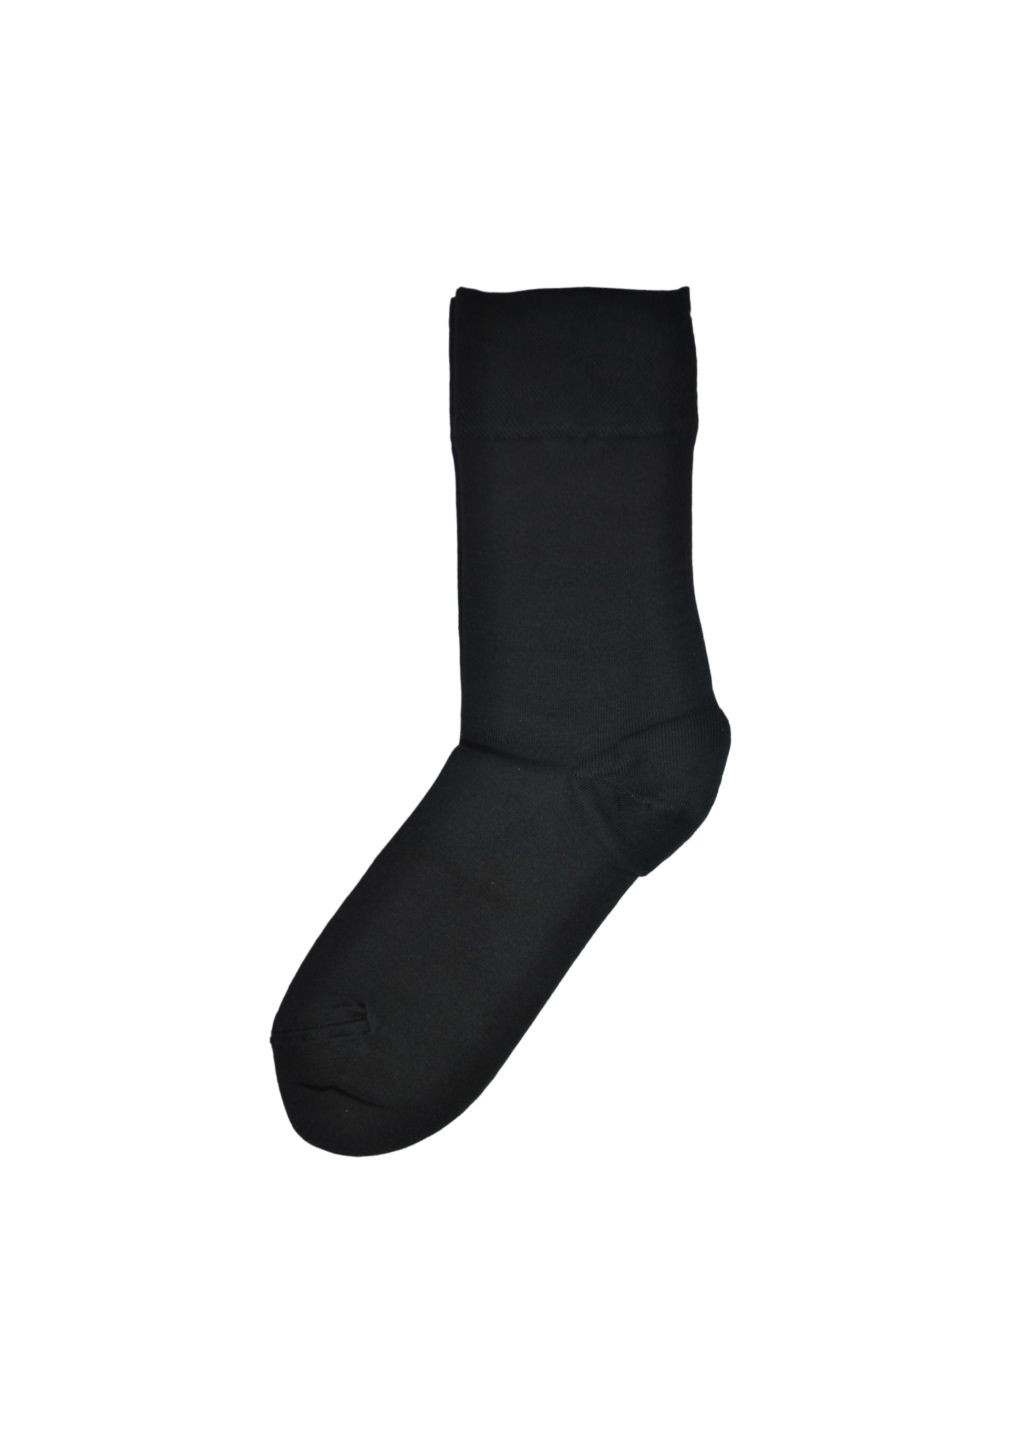 NTF Шкарпетки чол. (середньої довжини) MS3C/Sl-cl, р.39-42, black. Набір (3 шт.) MZ ms3c_sl-cl (259038666)